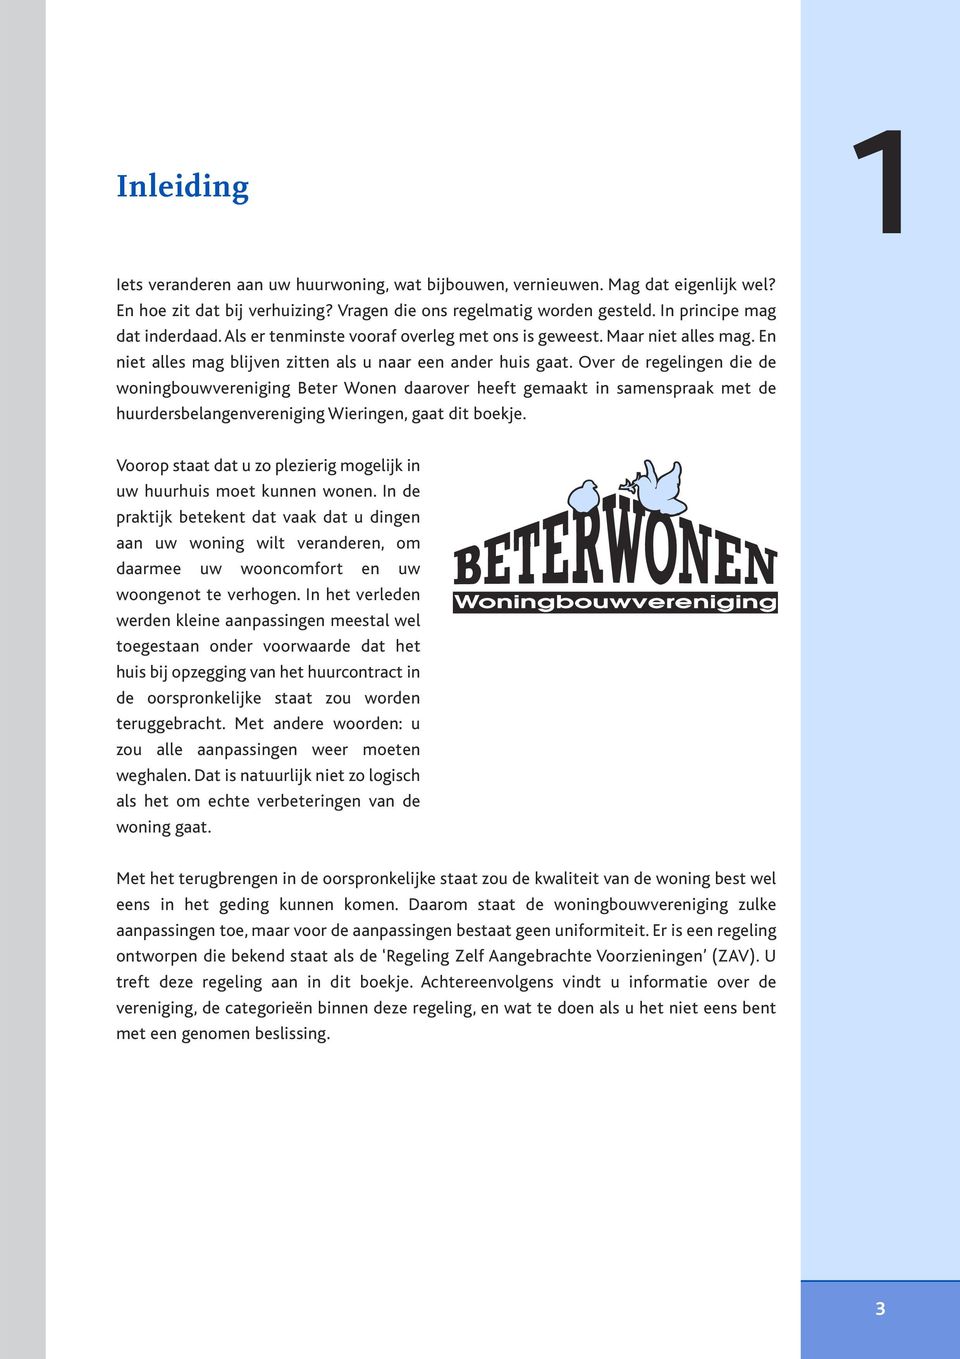 Over de regelingen die de woningbouwvereniging Beter Wonen daarover heeft gemaakt in samenspraak met de huurdersbelangenvereniging Wieringen, gaat dit boekje.